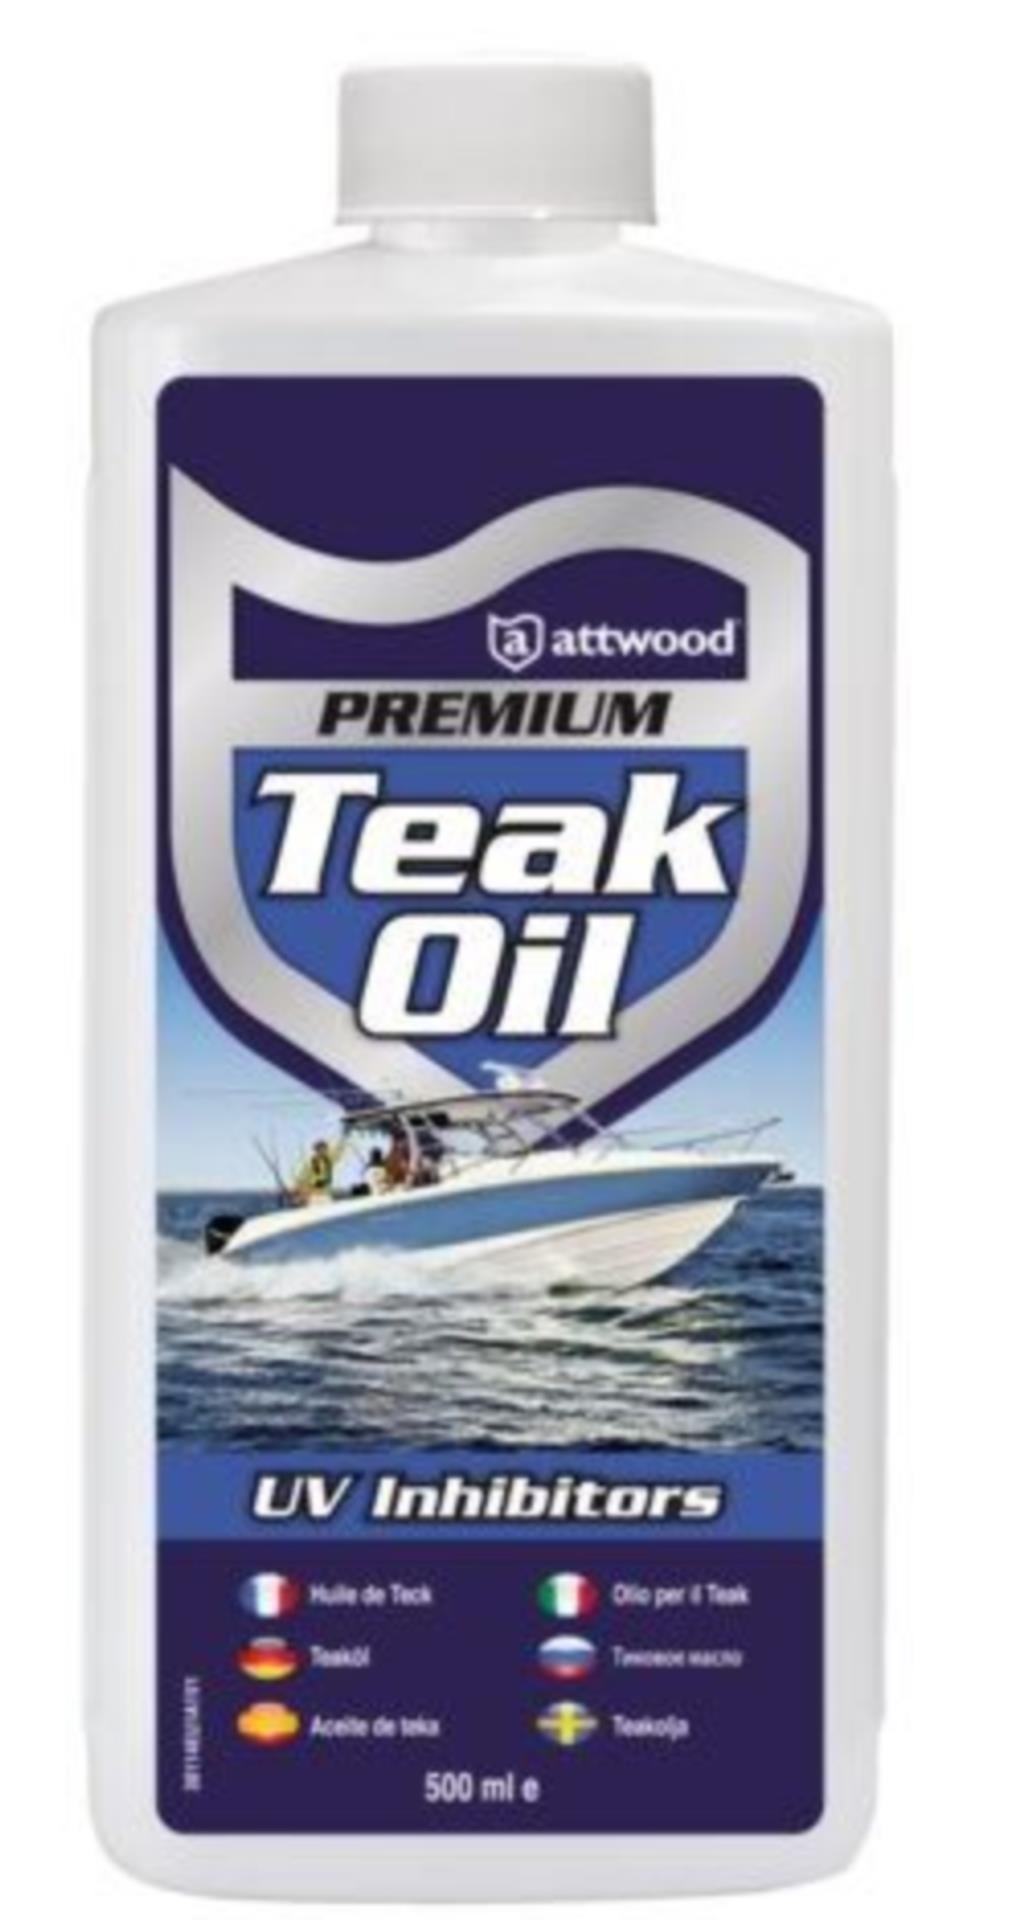 Attwood Premium Golden Teak Oil, 500 ml